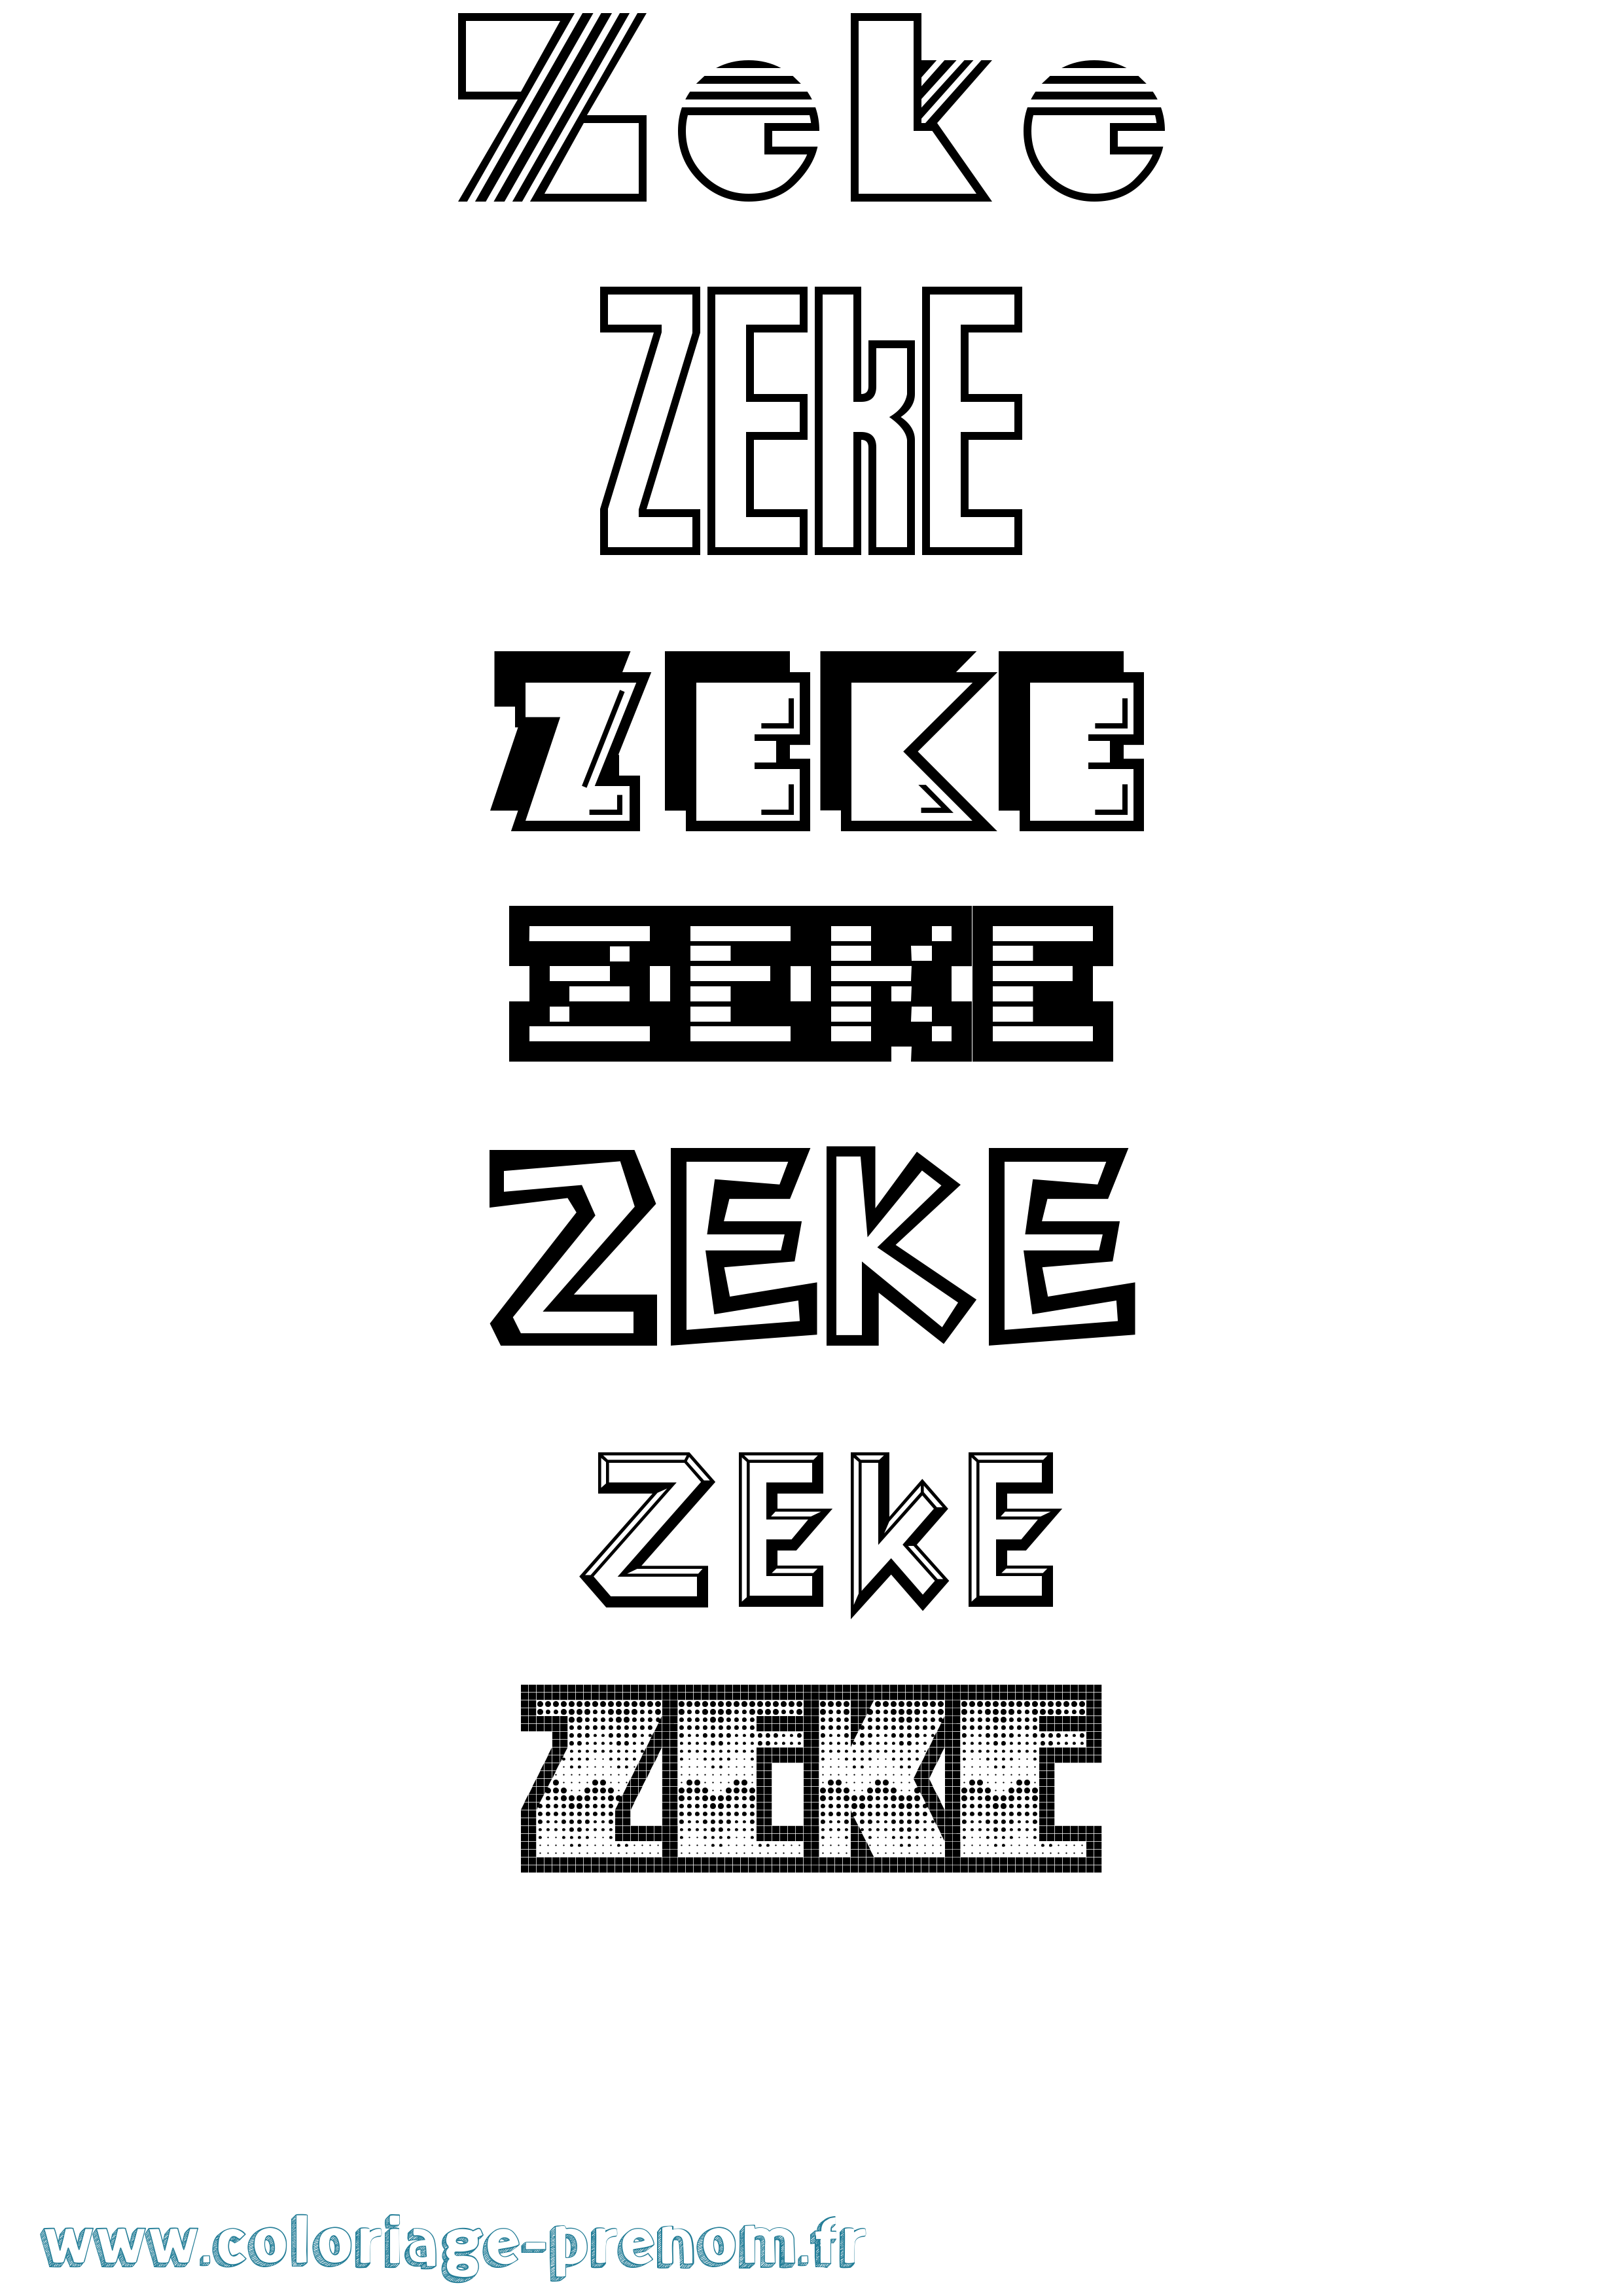 Coloriage prénom Zeke Jeux Vidéos